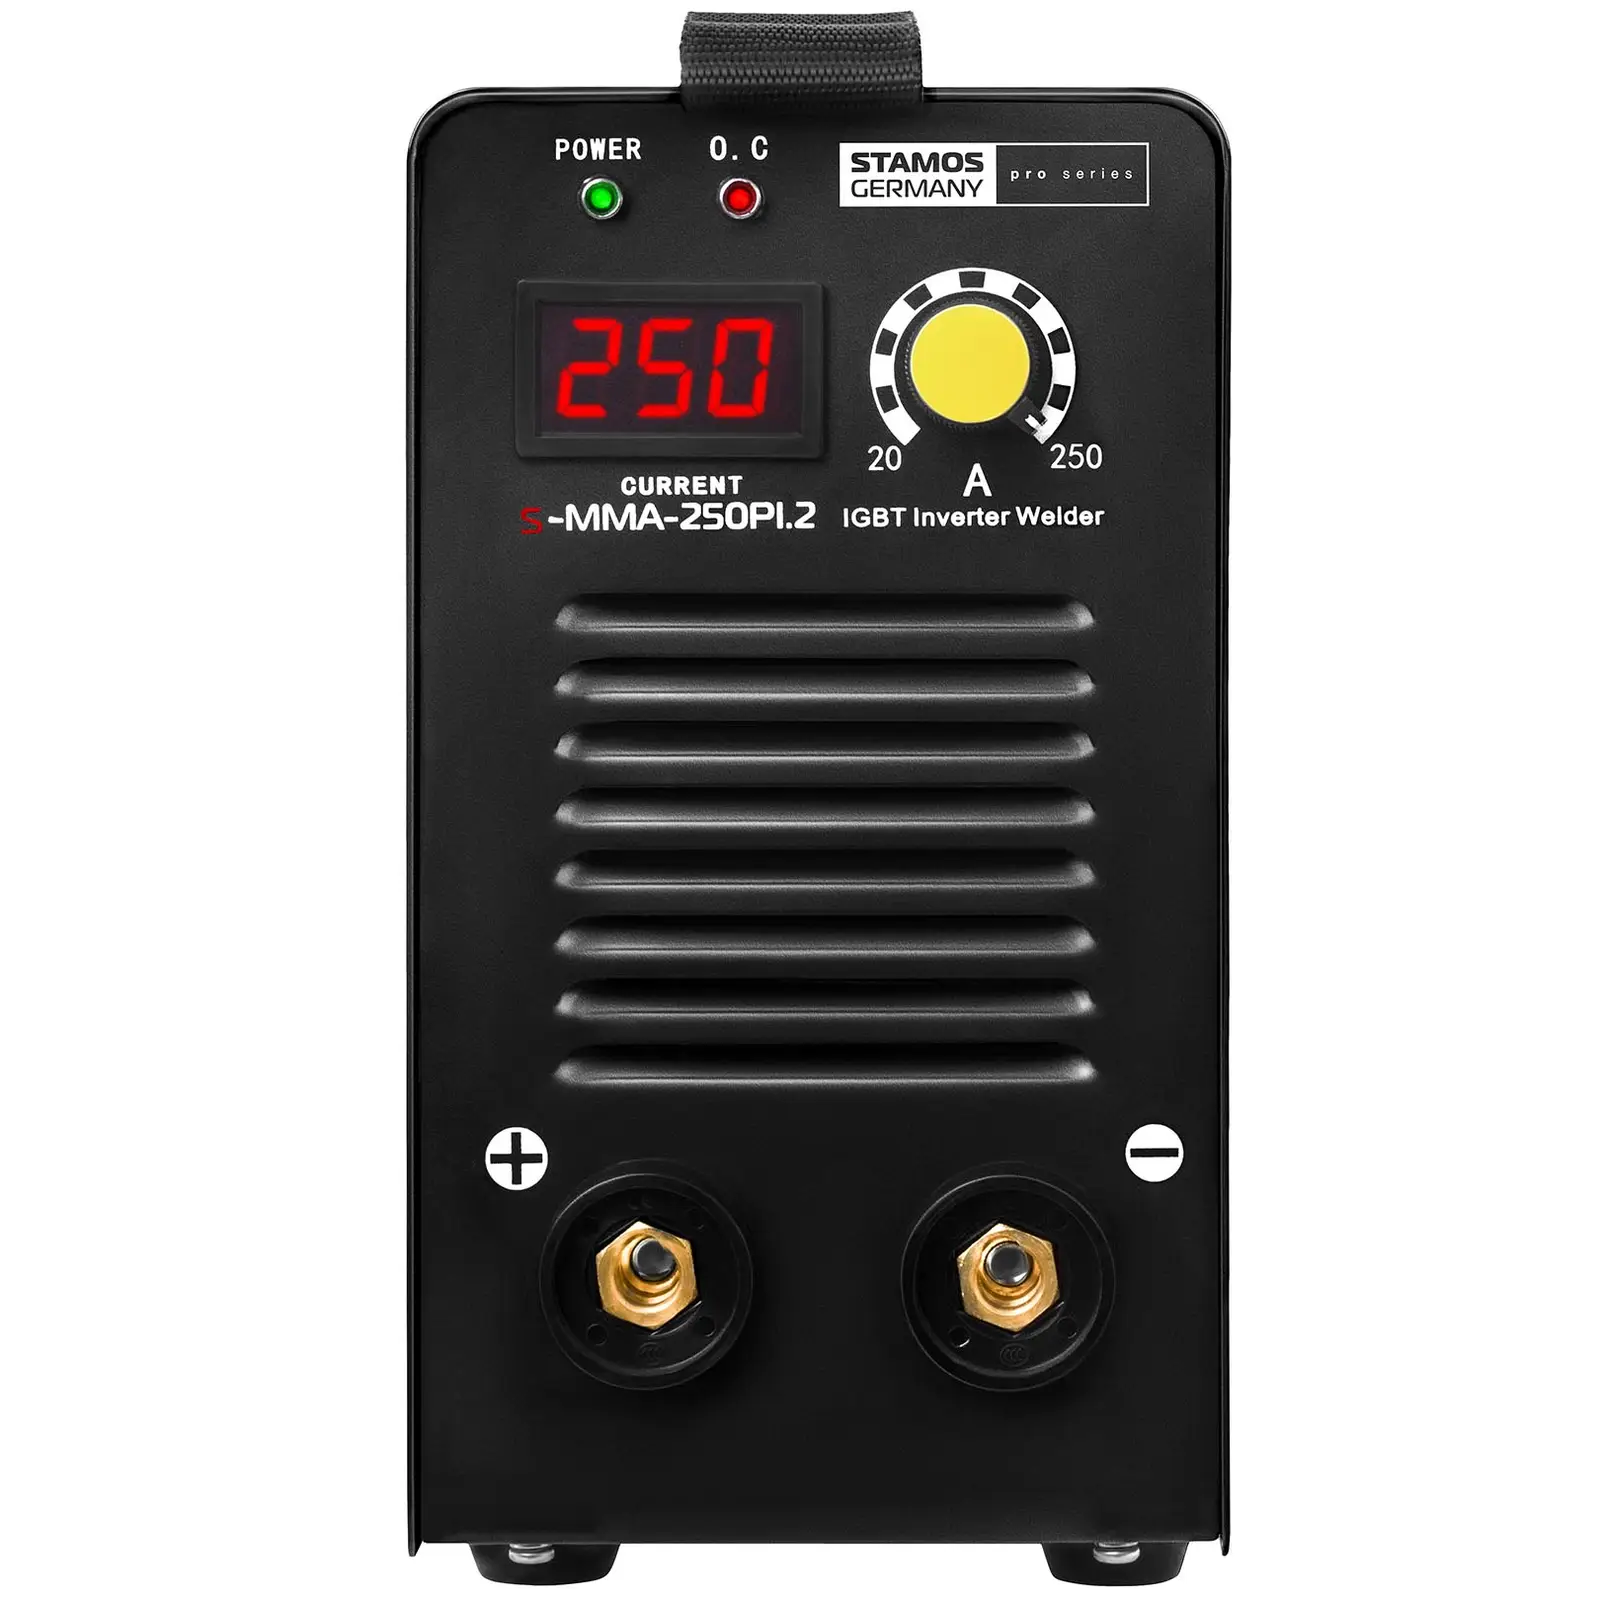 Elektróda hegesztőgép készlet plusz hegesztő kesztyű - 250 A - 8 m kábel - Hot Start